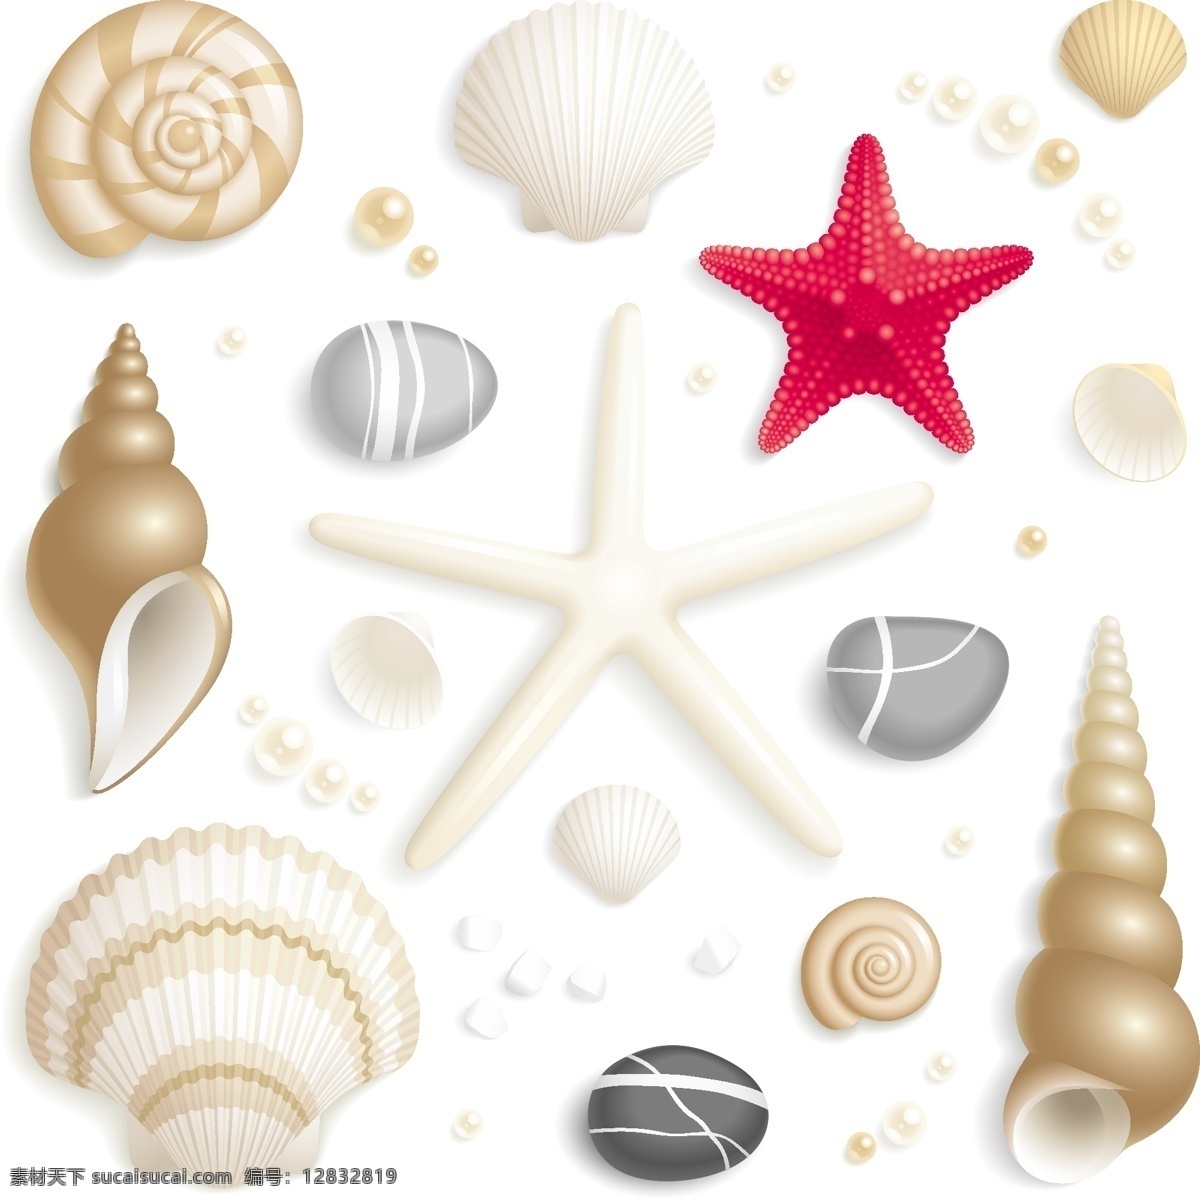 卡通矢量贝壳 贝壳 卡通 海螺 海星 海马 珍珠 钉螺 鹅卵石 海产品 动物植物矢量 生物世界 海洋生物